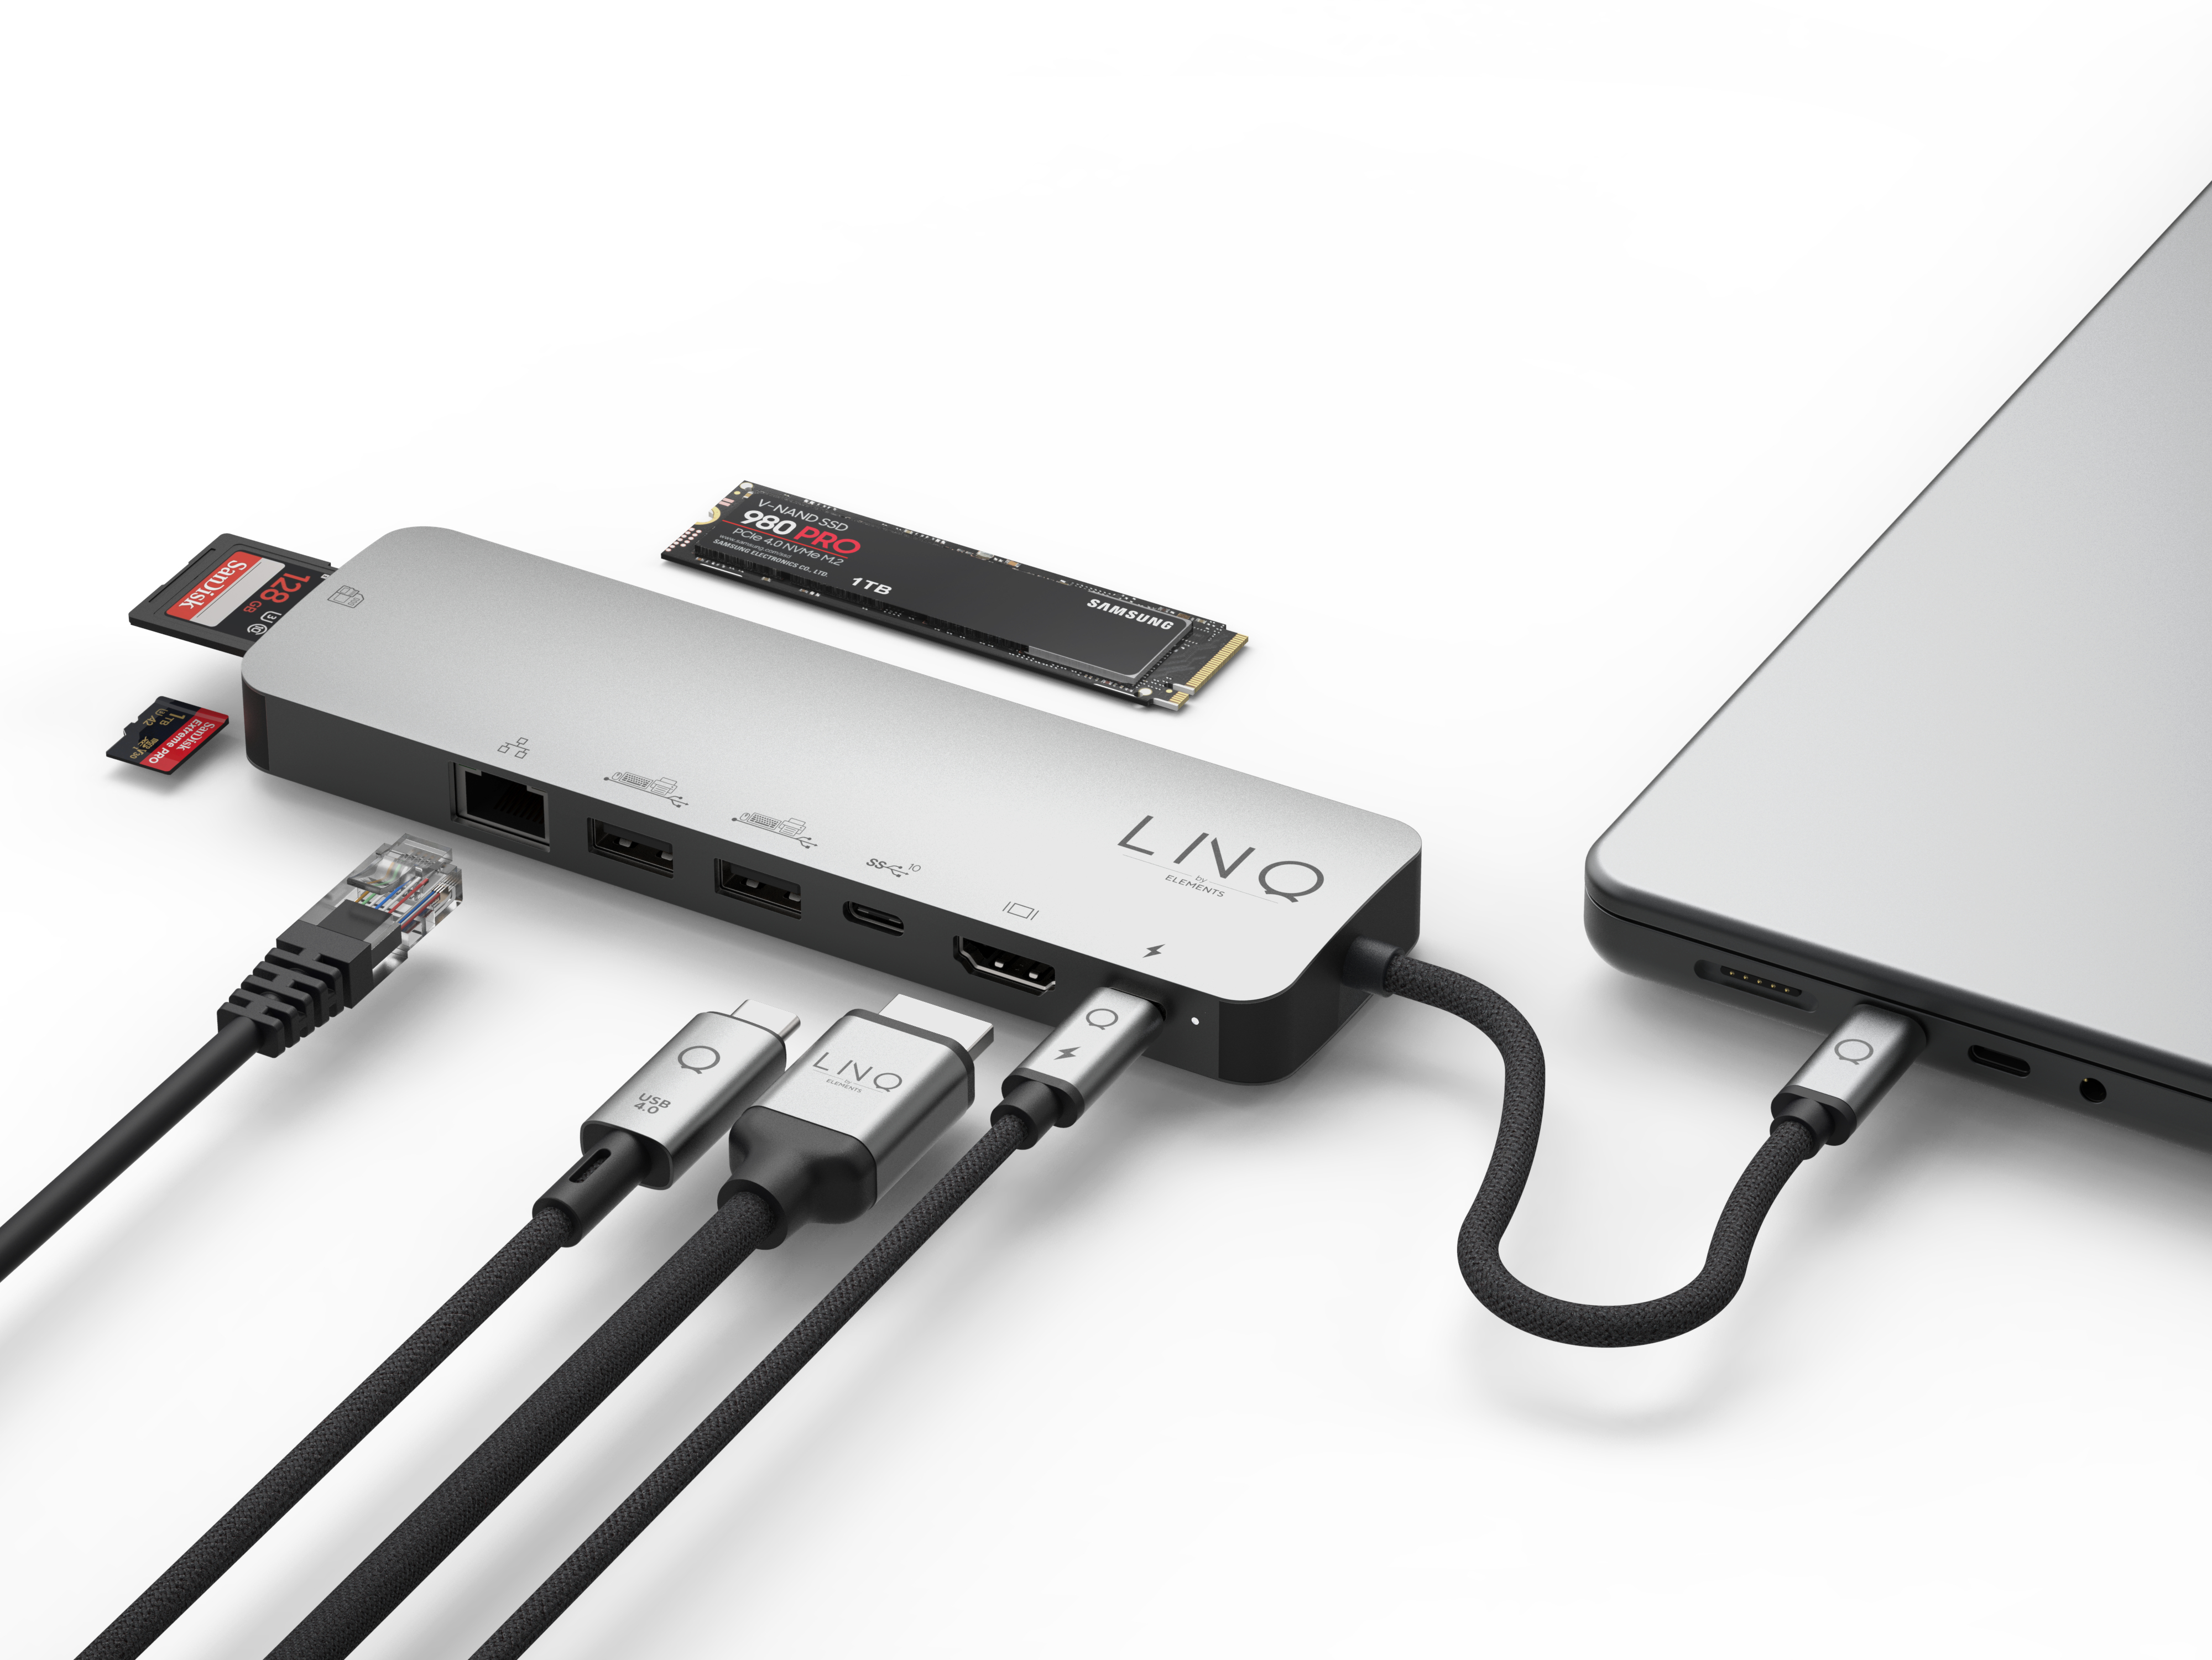 Linq 9in1 Pro SSD Hub